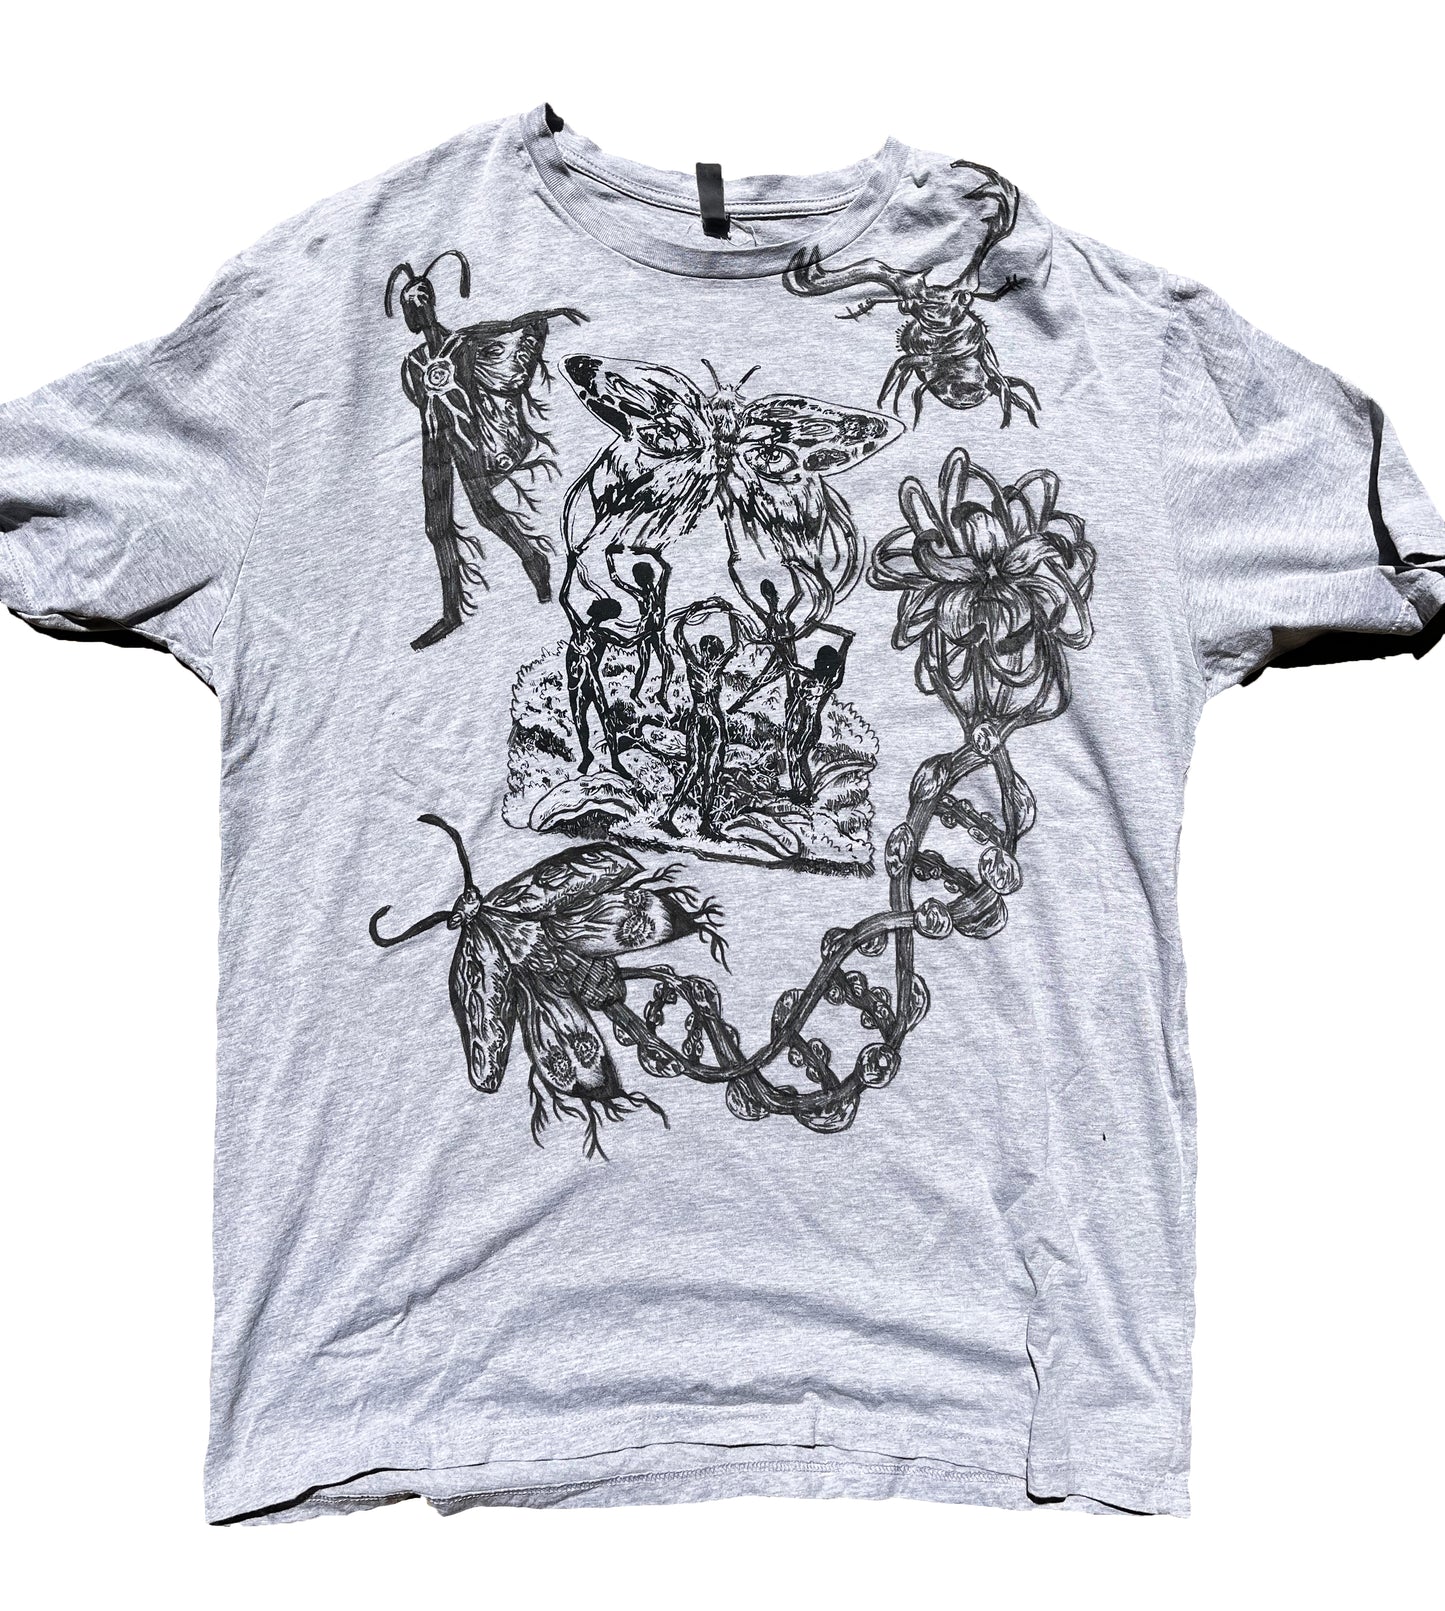 XXL Ritual 02 Graphic Tee Shirt